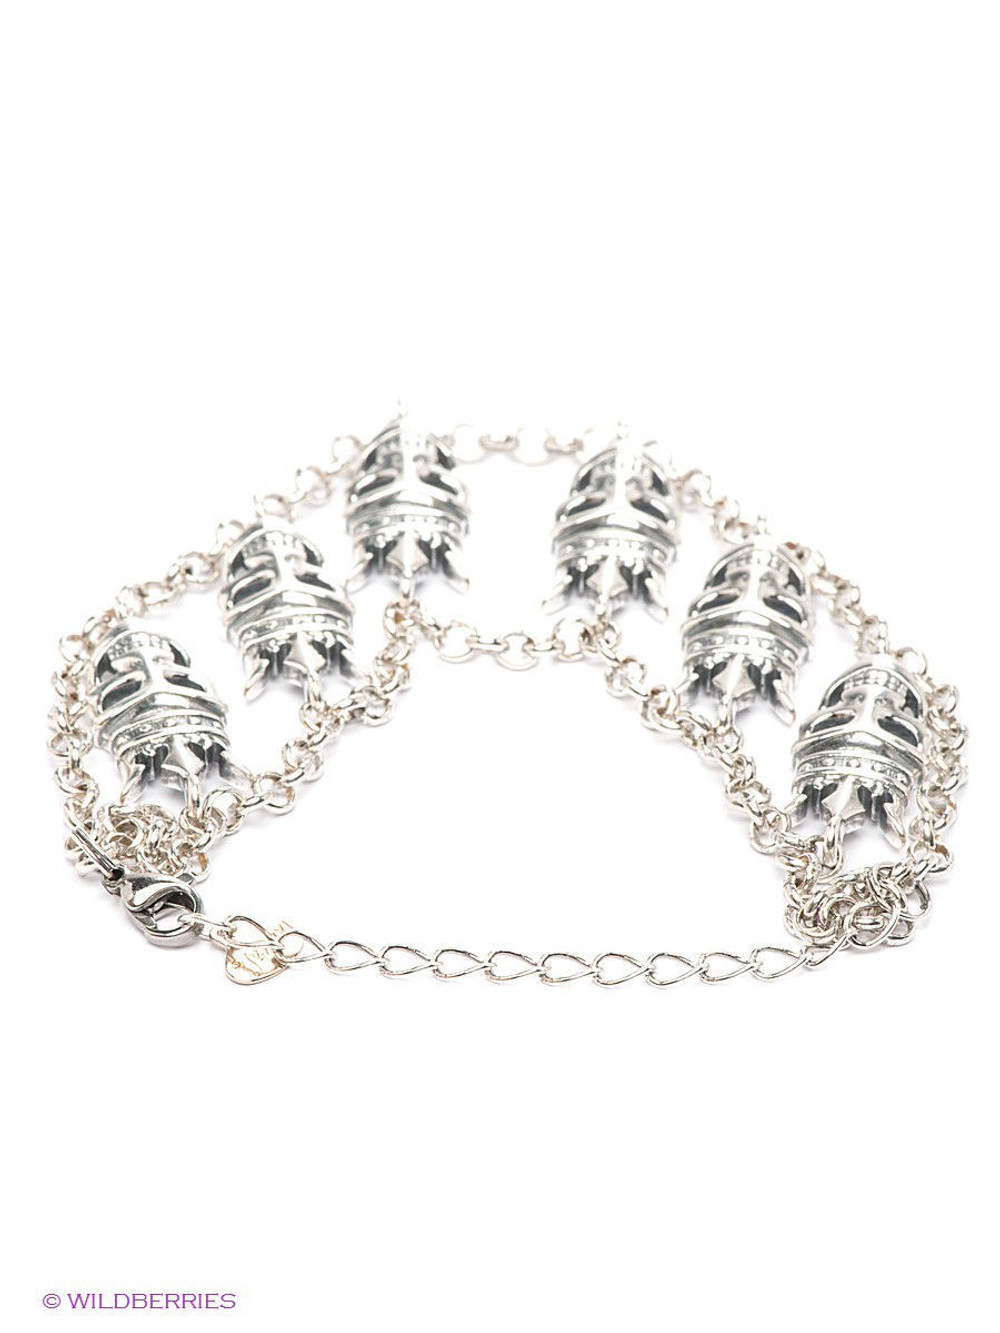 "Митчелл" браслет в серебряном покрытии из коллекции "Crystal Skull" от Jenavi с замком карабин